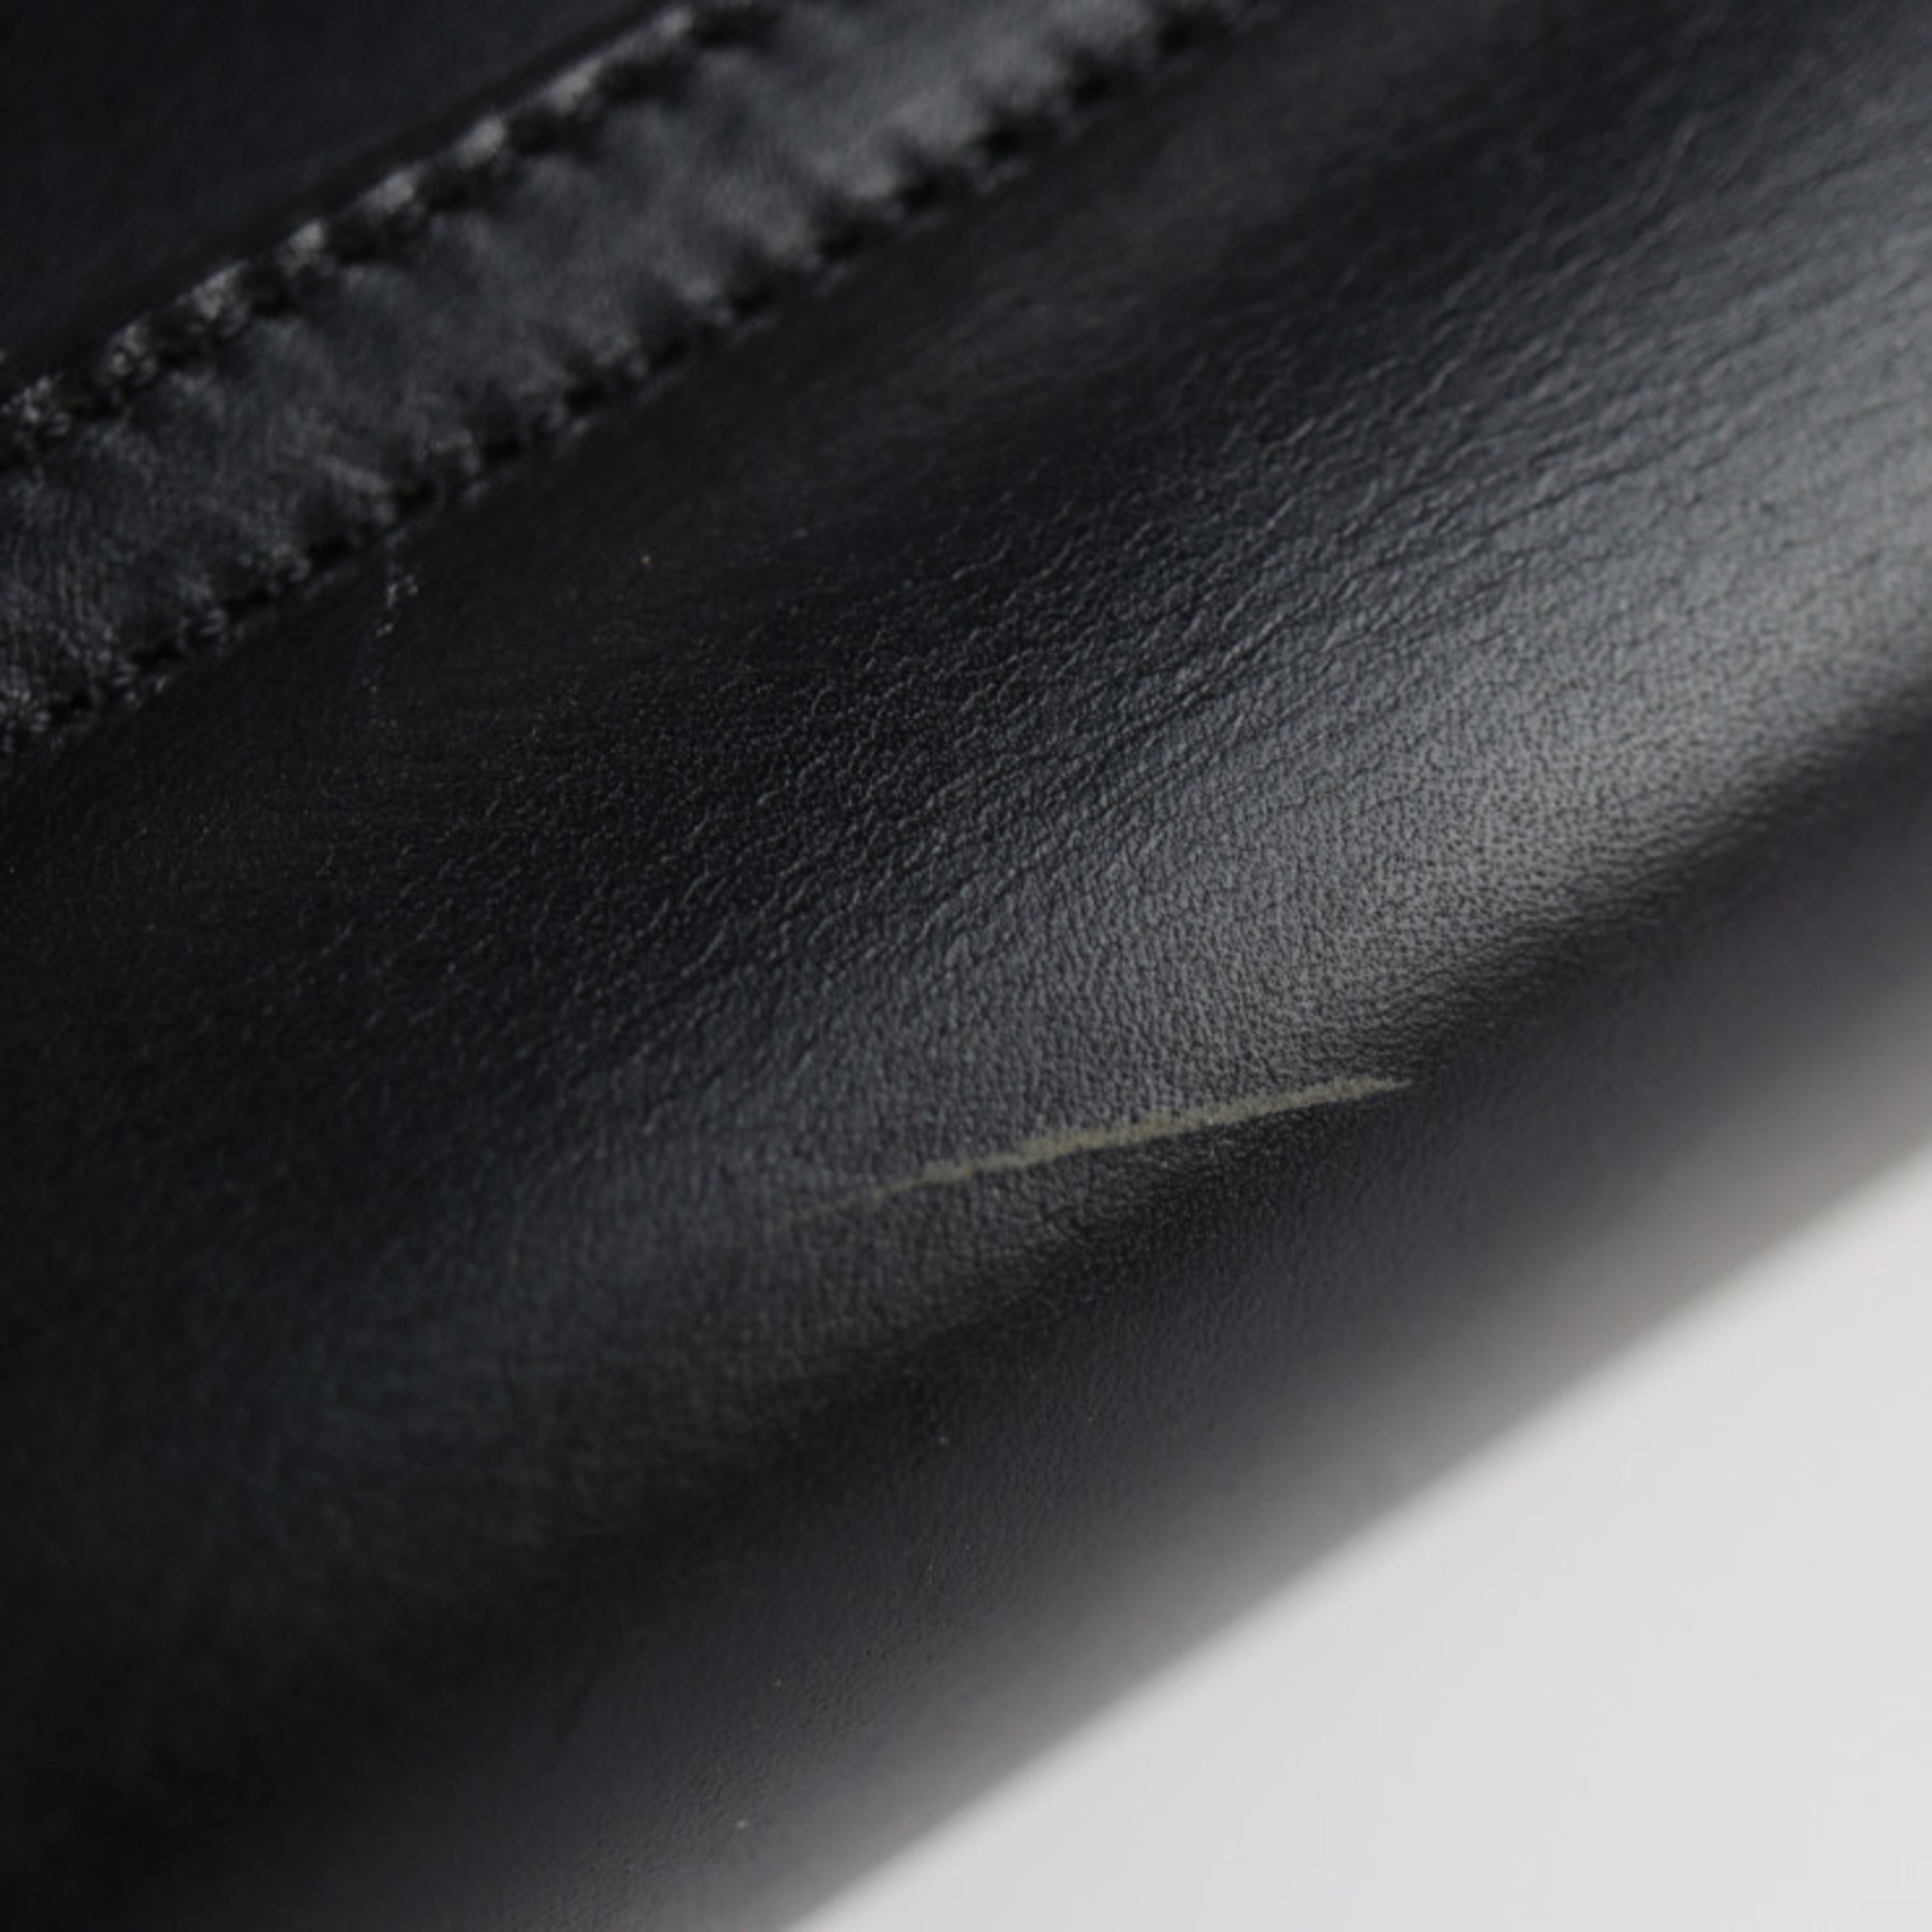 Salvatore Ferragamo shoulder bag 21 5639 leather black gold hardware heel motif